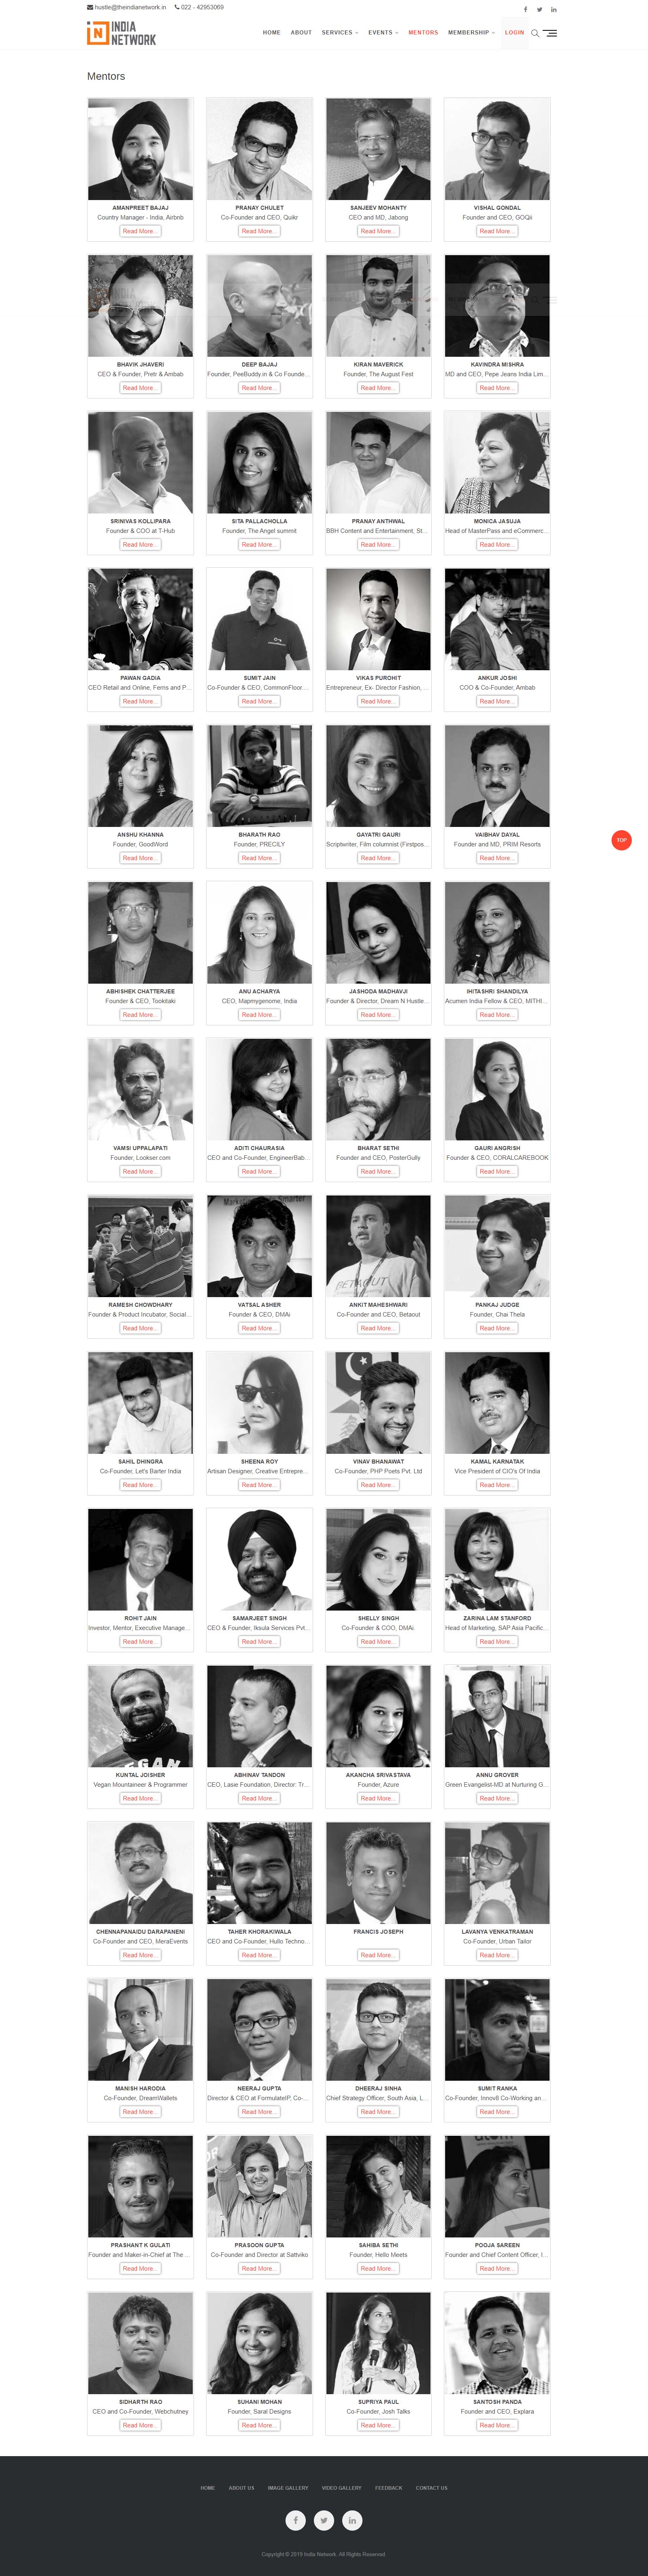 india-network-mentors